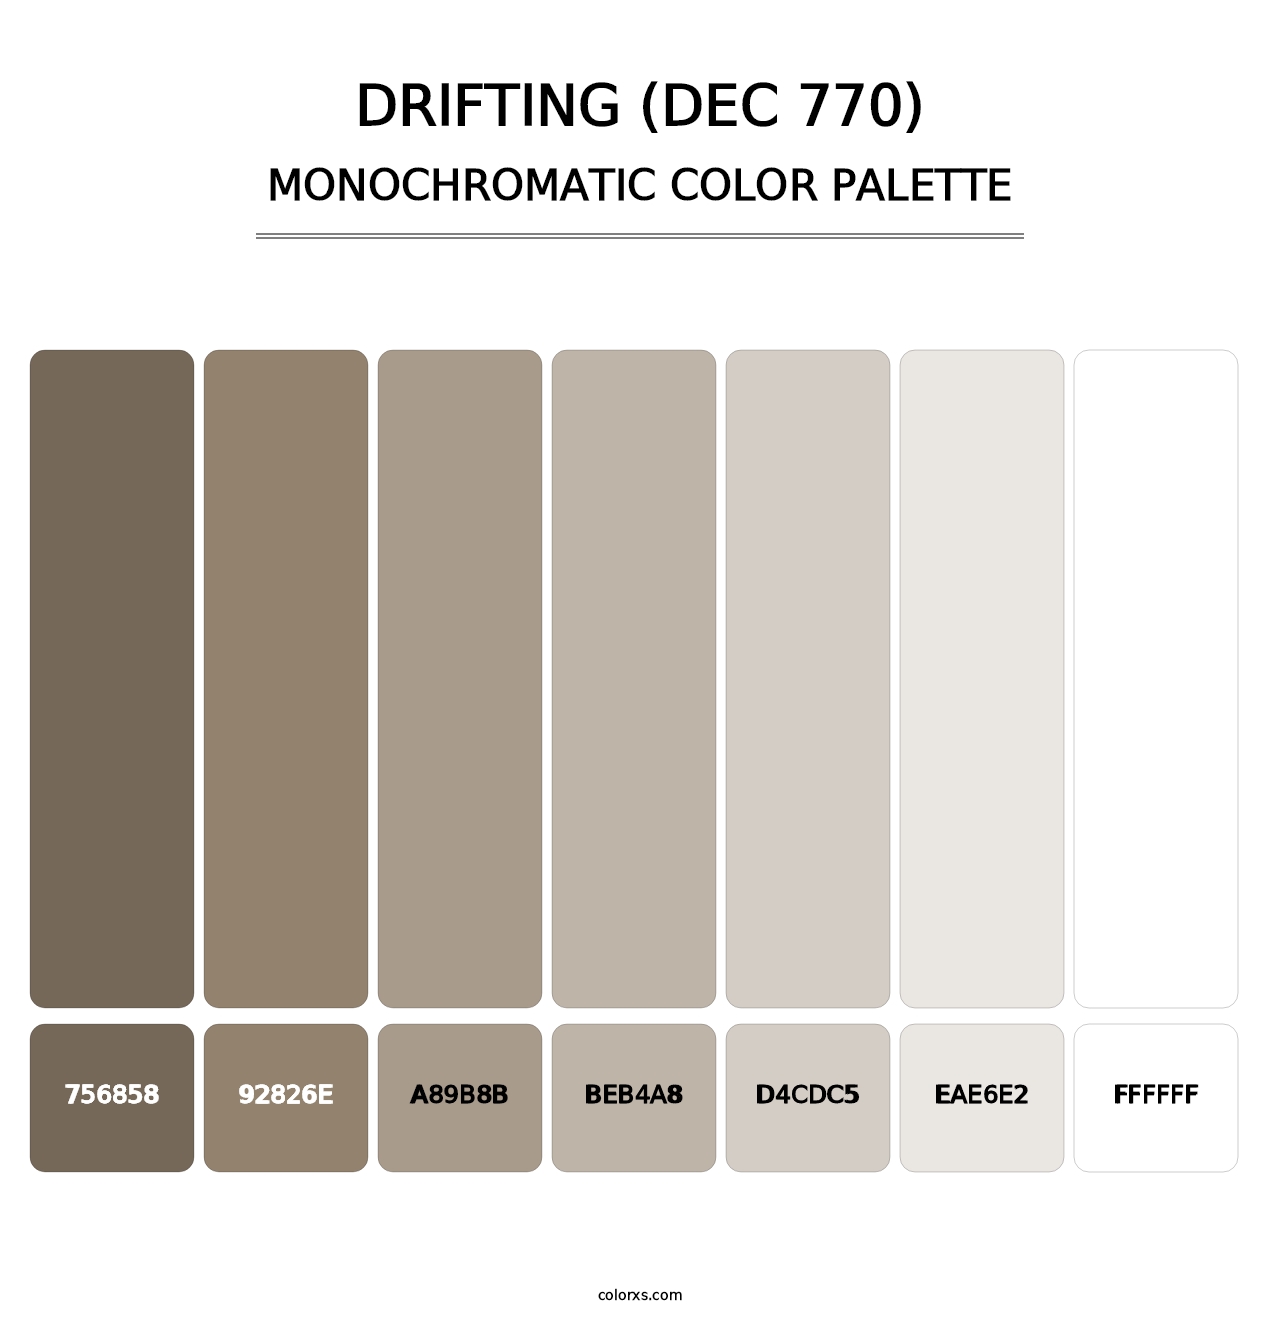 Drifting (DEC 770) - Monochromatic Color Palette